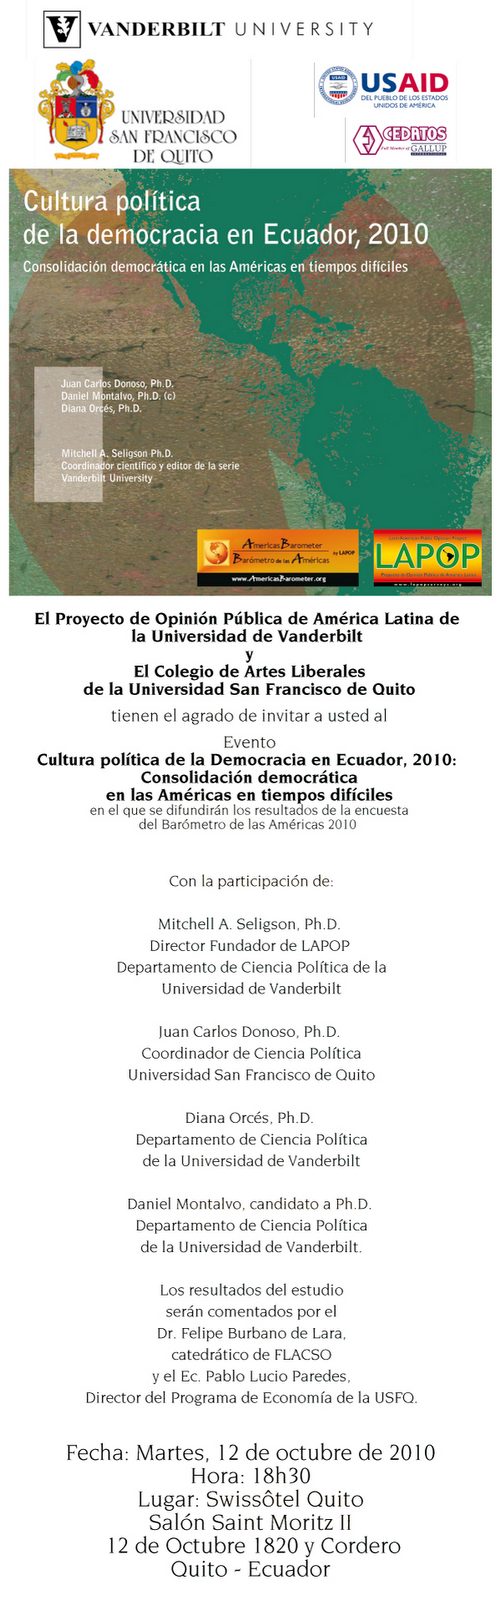 Evento USFQ: Cultura Política de la Democracia en Ecuador 2010